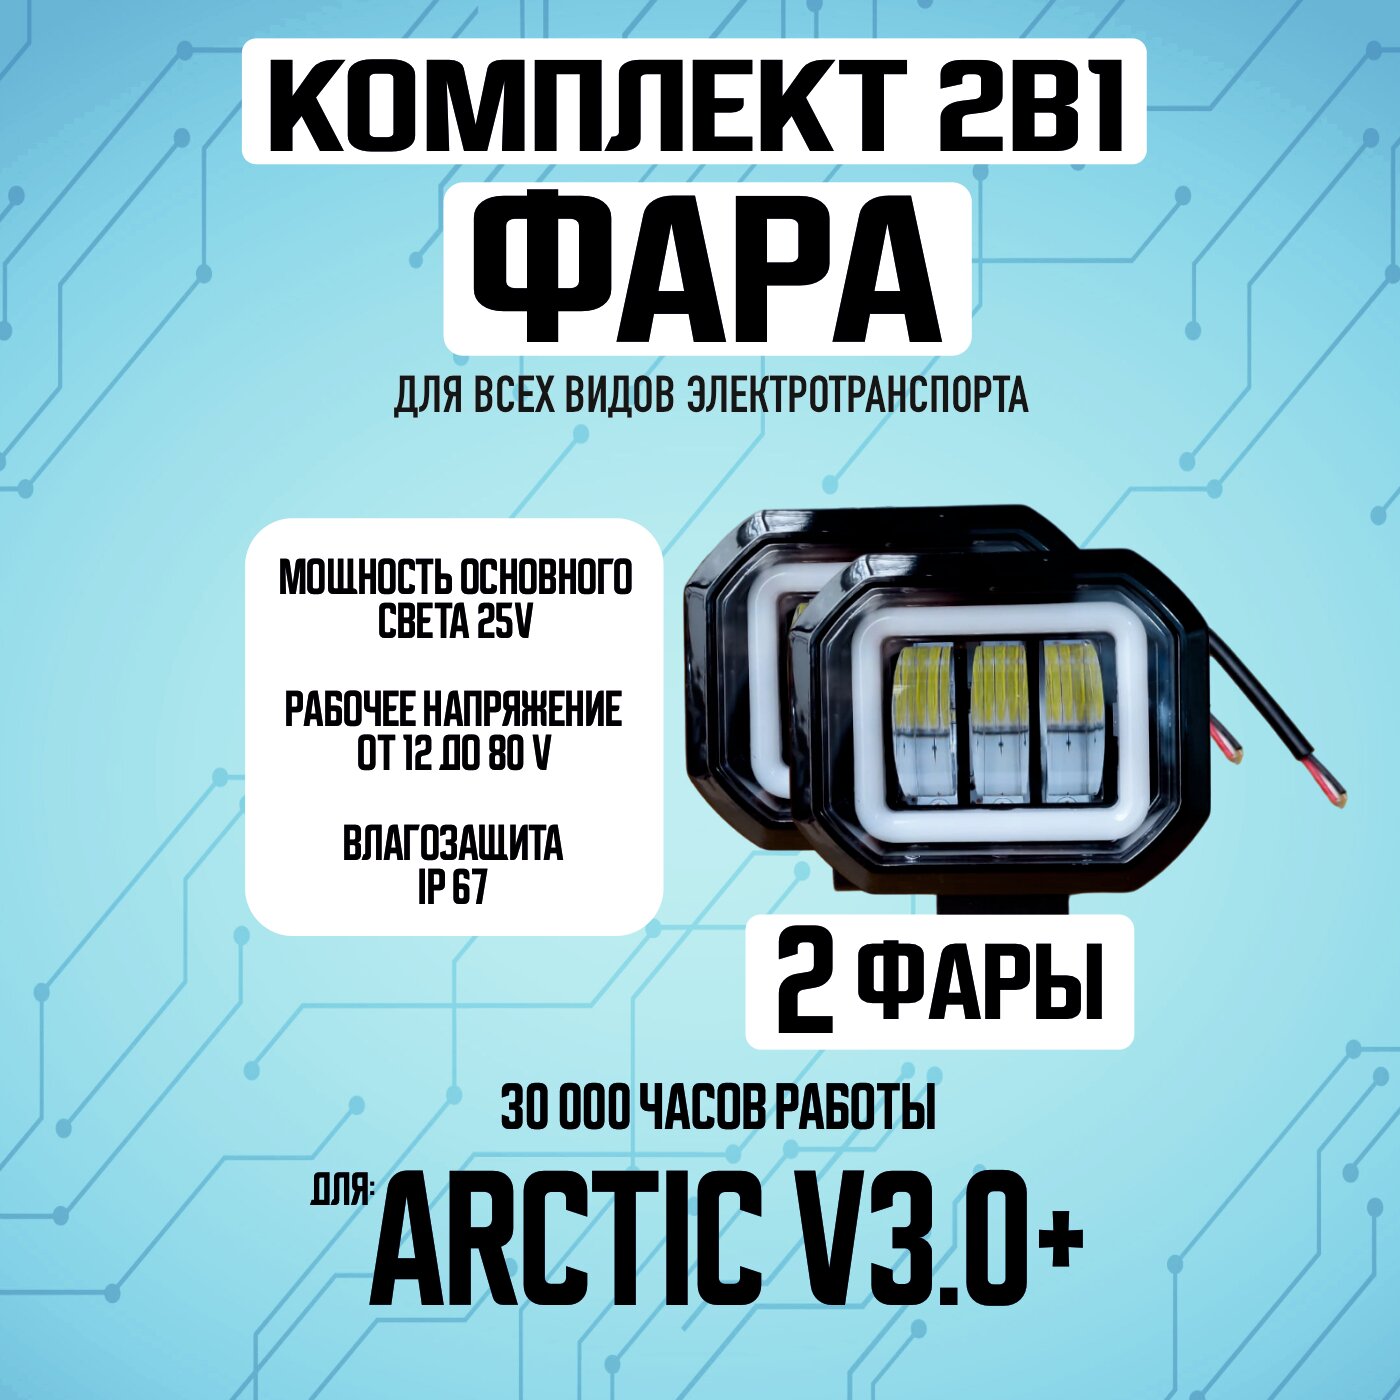 Противотуманная светодиодная фара Arctic v3.0+ для всех видов электротранспорта / Прямоугольной формы / 2 диода птф дхо, 2 штуки